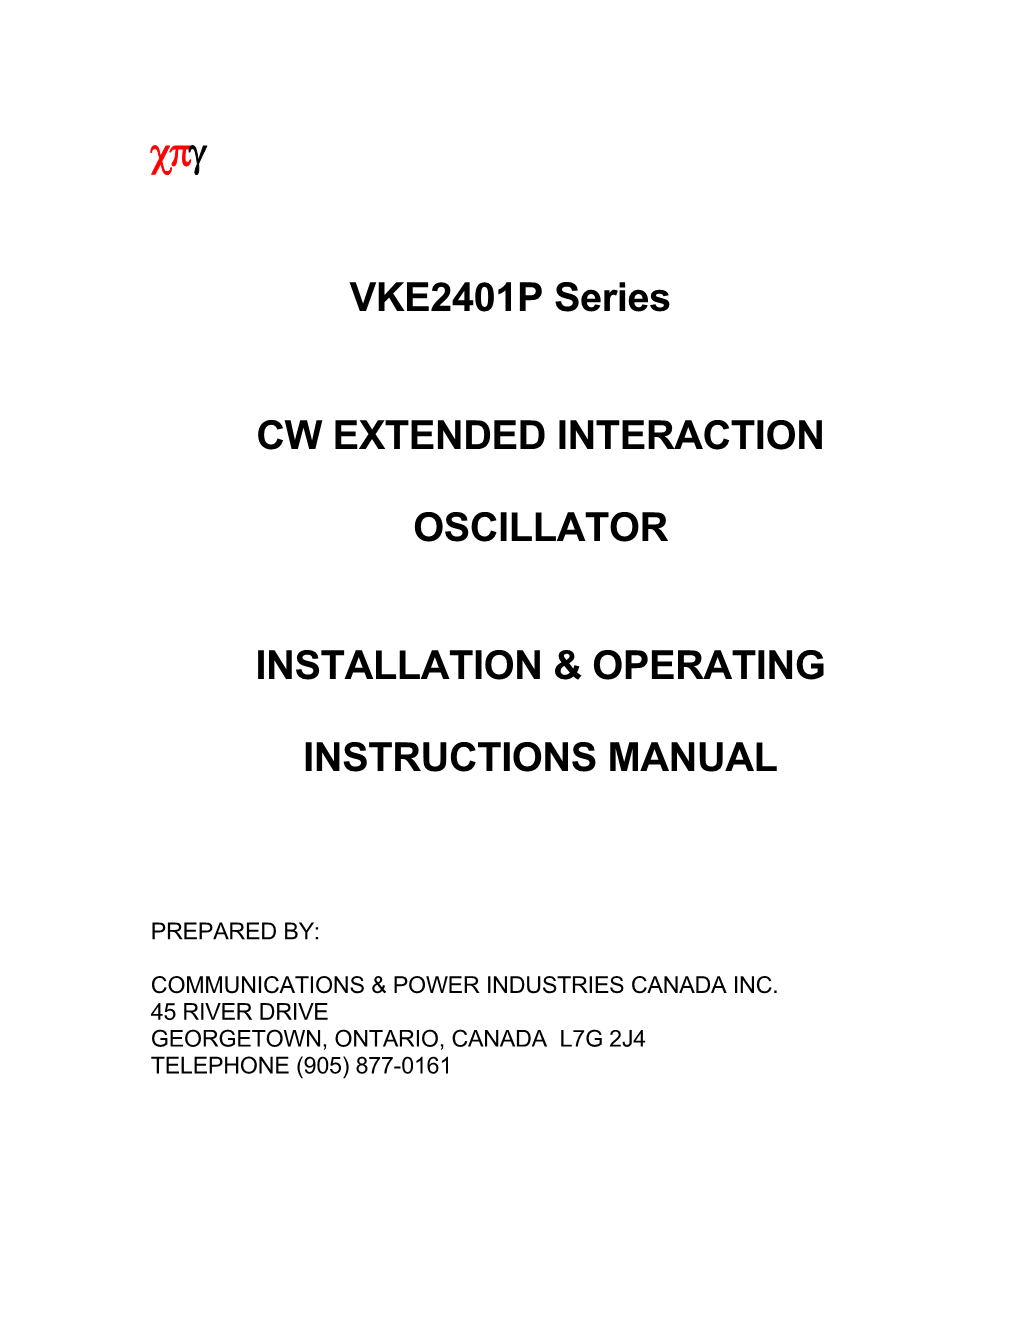 VKE2401P Series Operating Manual